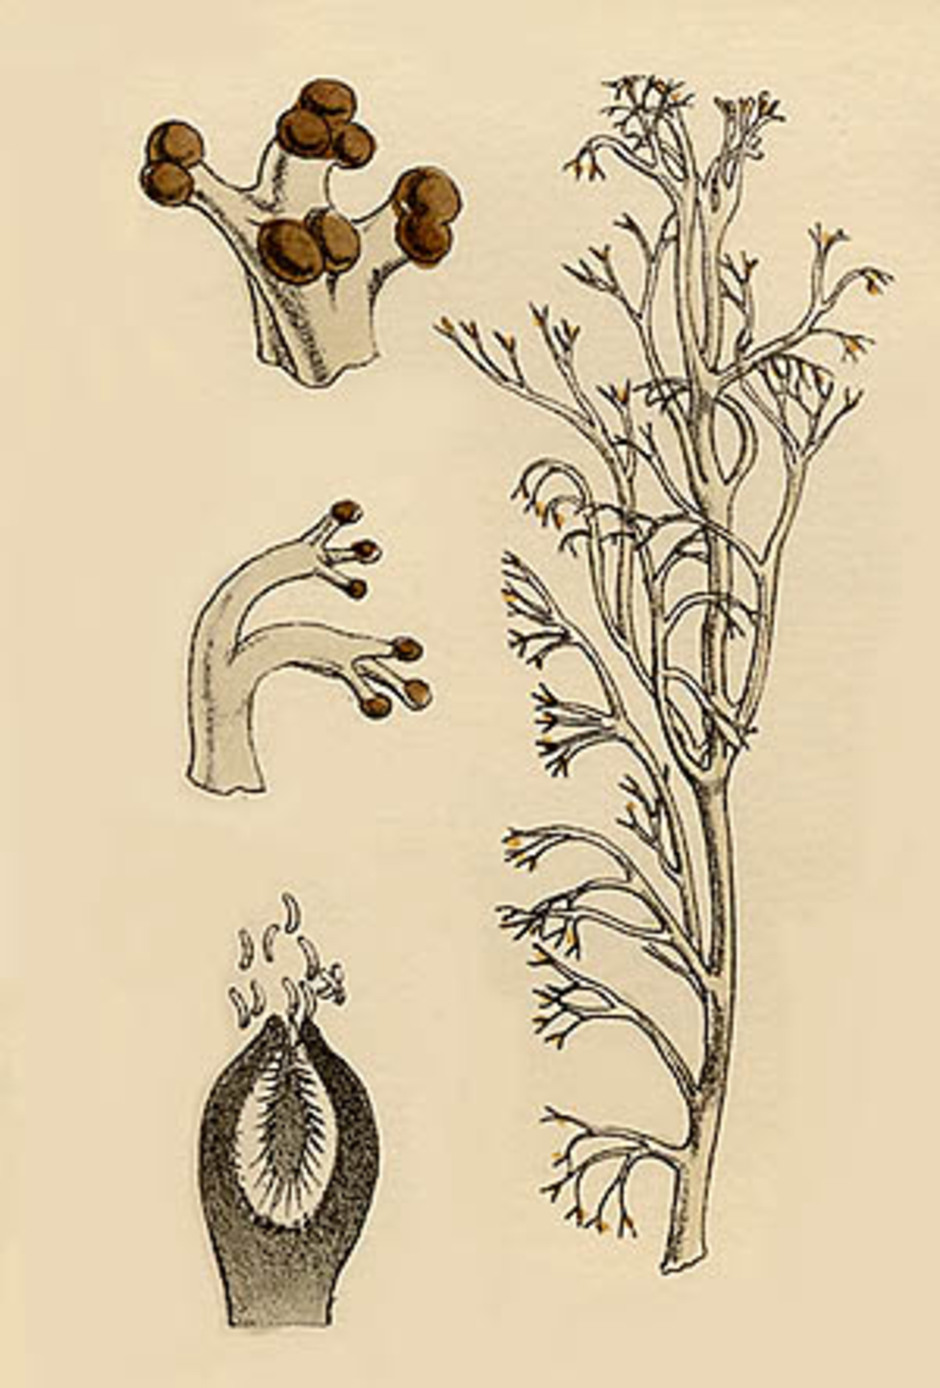 Illustration av grå renlav ur British Lichens av W. L. Lindsay från 1856. Detaljbilderna visar lavens olika sporbildande strukturer som sitter i grenspetsarna. Överst till vänster apothecier som innehåller ascosporer (könliga sporer) och inte är så vanliga hos grå renlav. I mitten syns pyknider, och nederst en pyknid i genomskärning där man ser pyknosporerna bildas i ett hålrum.